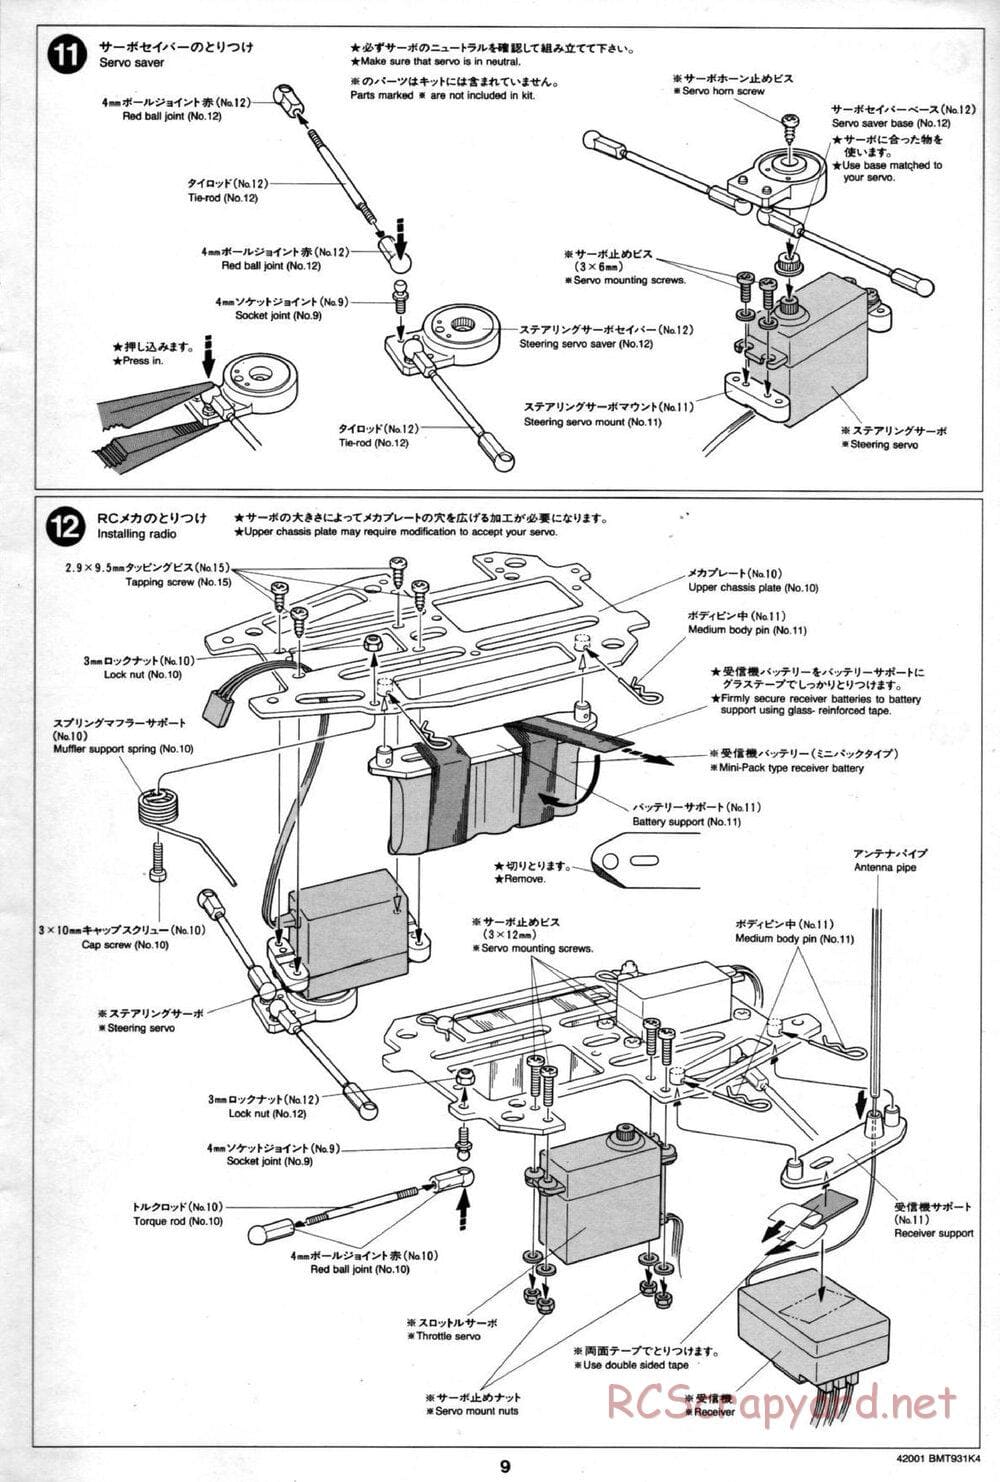 Tamiya - BMT 931 K4 Racing Chassis - Manual - Page 9